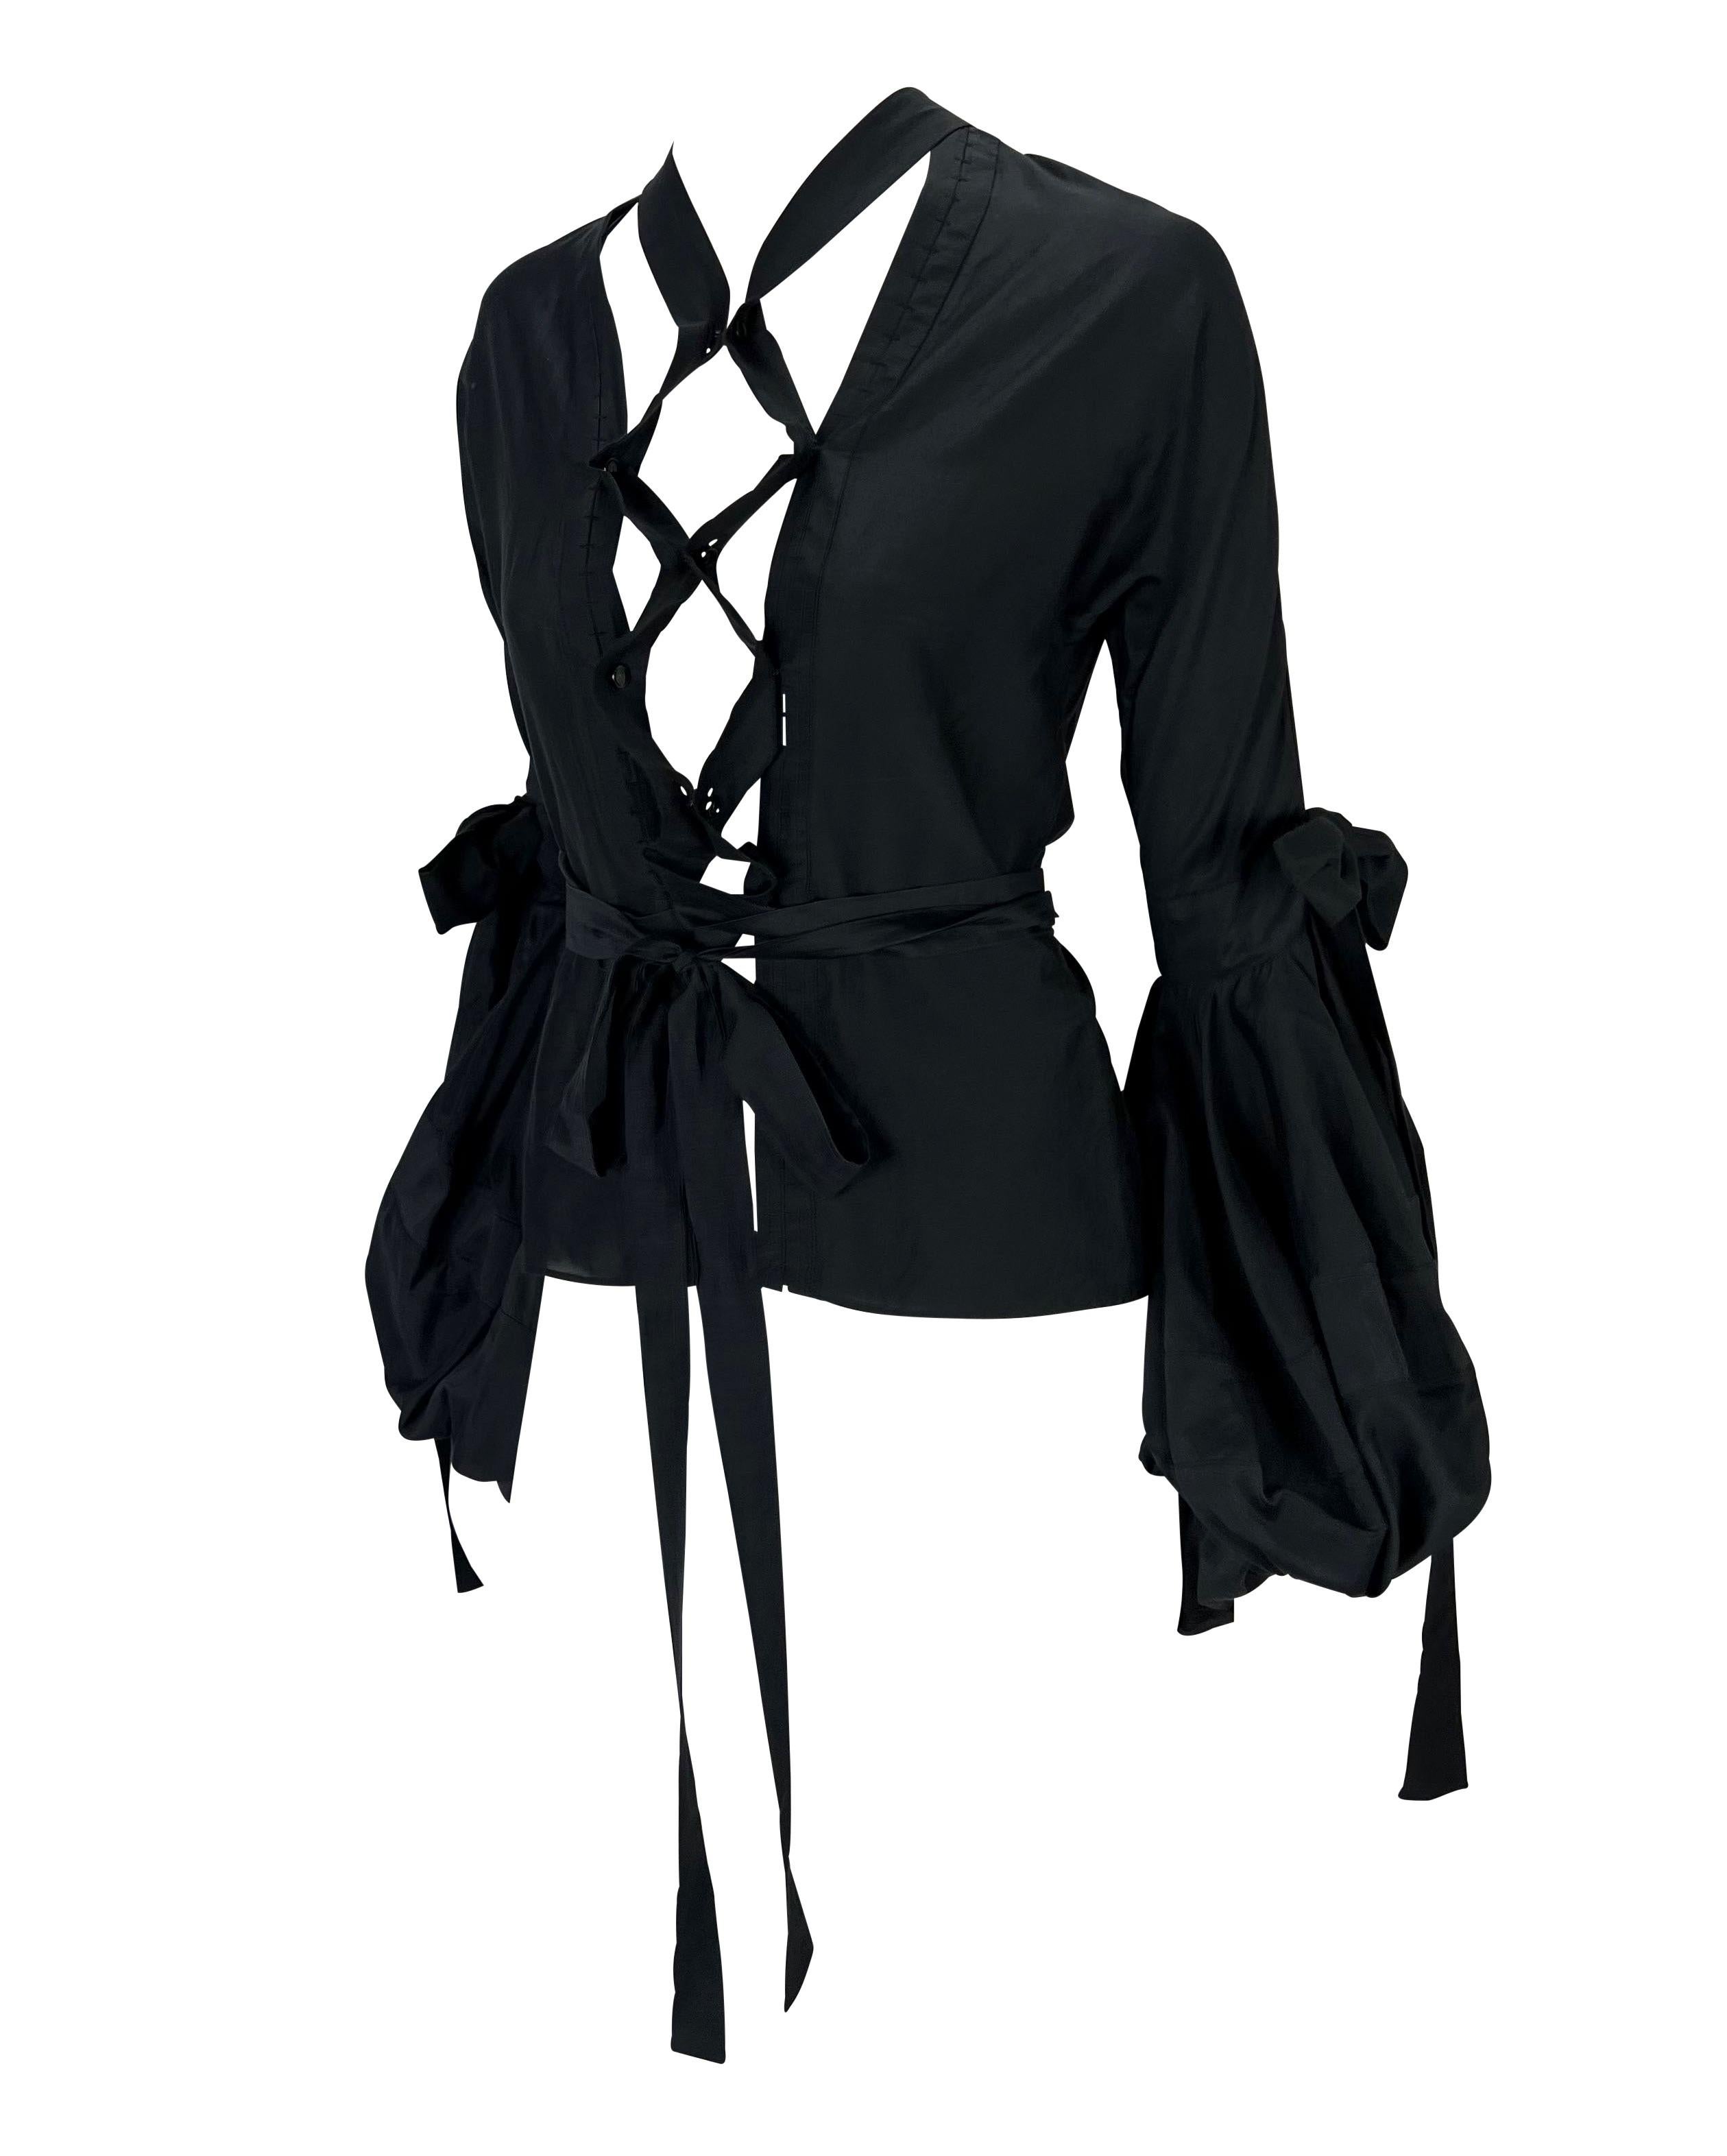 Ich präsentiere eine Yves Saint Laurent Rive Gauche Bluse mit Schleife und Bändern, entworfen von Tom Ford. Eine Variation dieses Oberteils wurde als Look Nummer 3 bei Carmen Kass in der Herbst/Winter 2002 Laufstegpräsentation gezeigt. Es hat weite